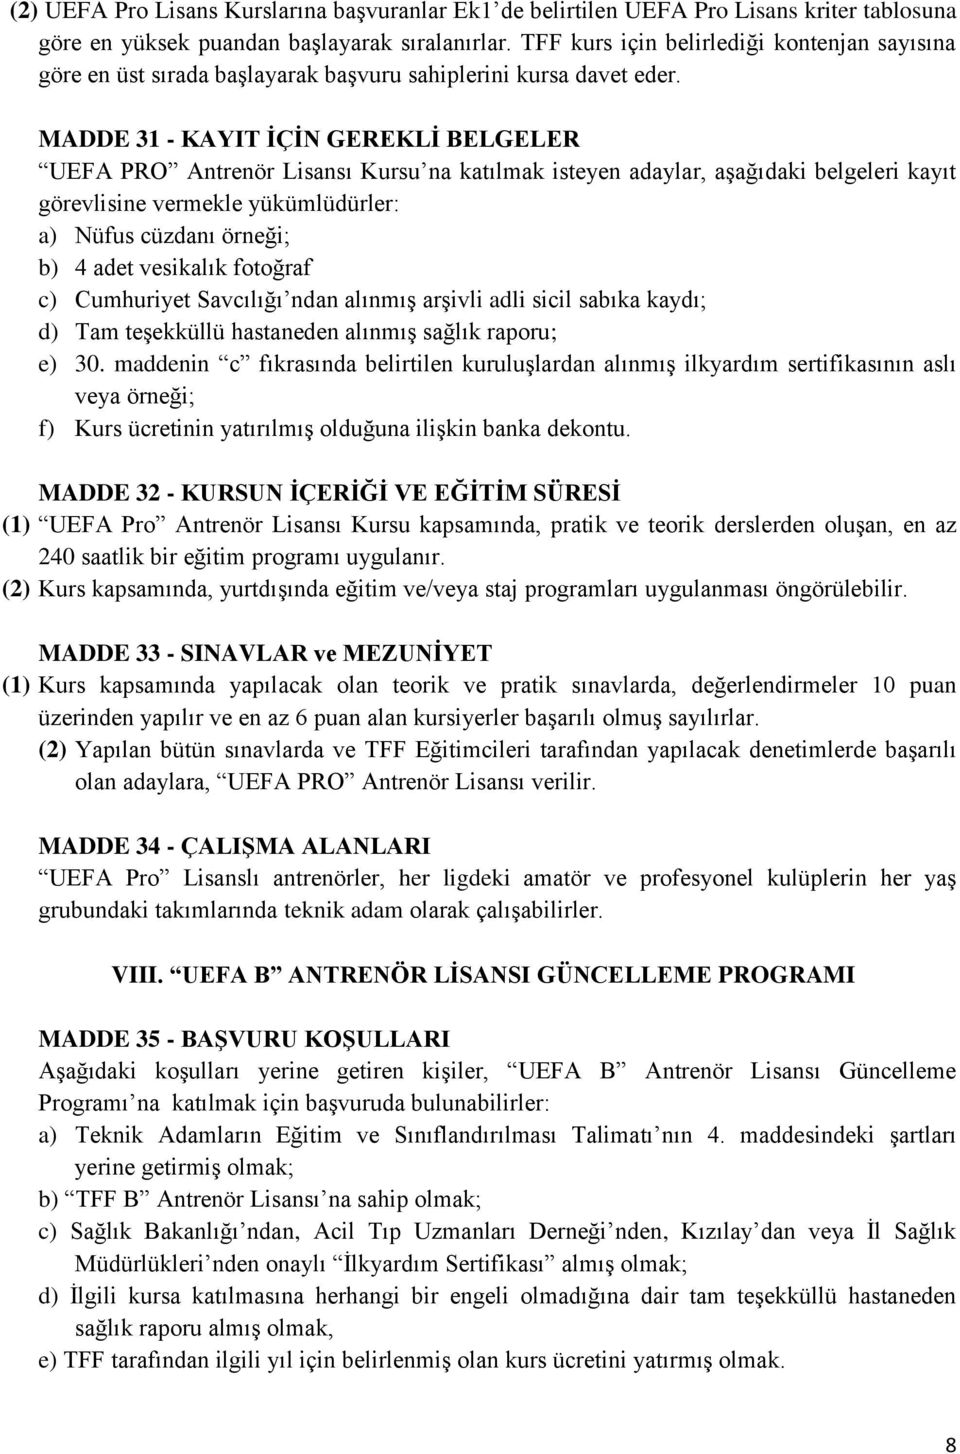 MADDE 31 - KAYIT ĠÇĠN GEREKLĠ BELGELER UEFA PRO Antrenör Lisansı Kursu na katılmak isteyen adaylar, aşağıdaki belgeleri kayıt görevlisine vermekle yükümlüdürler: a) Nüfus cüzdanı örneği; b) 4 adet